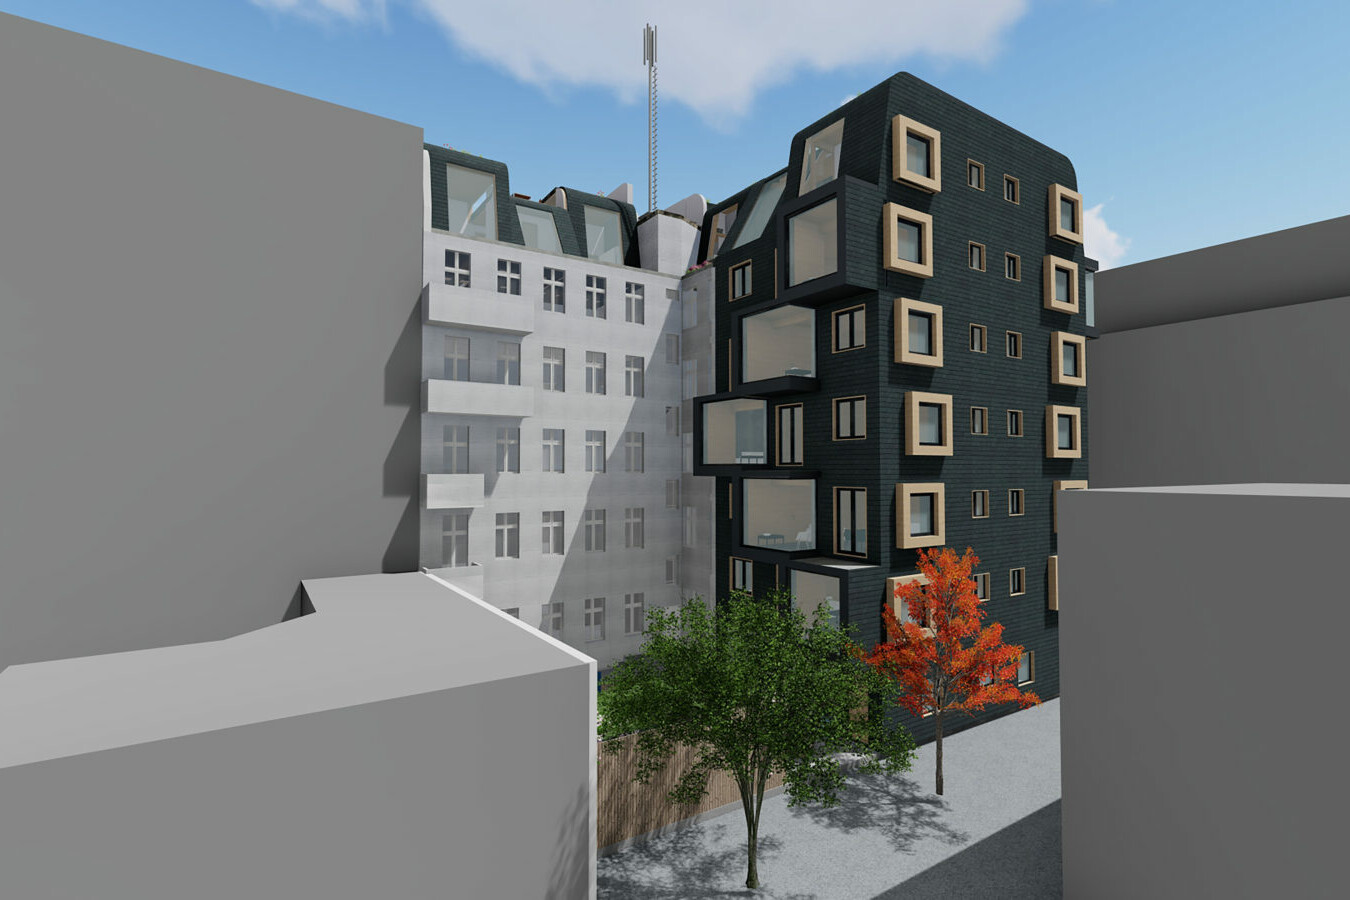 Neubau und Dachaufstockung in der Winsstr. in Massivholzbauweise. Bild von: Büro 213 Architekten GmbH.